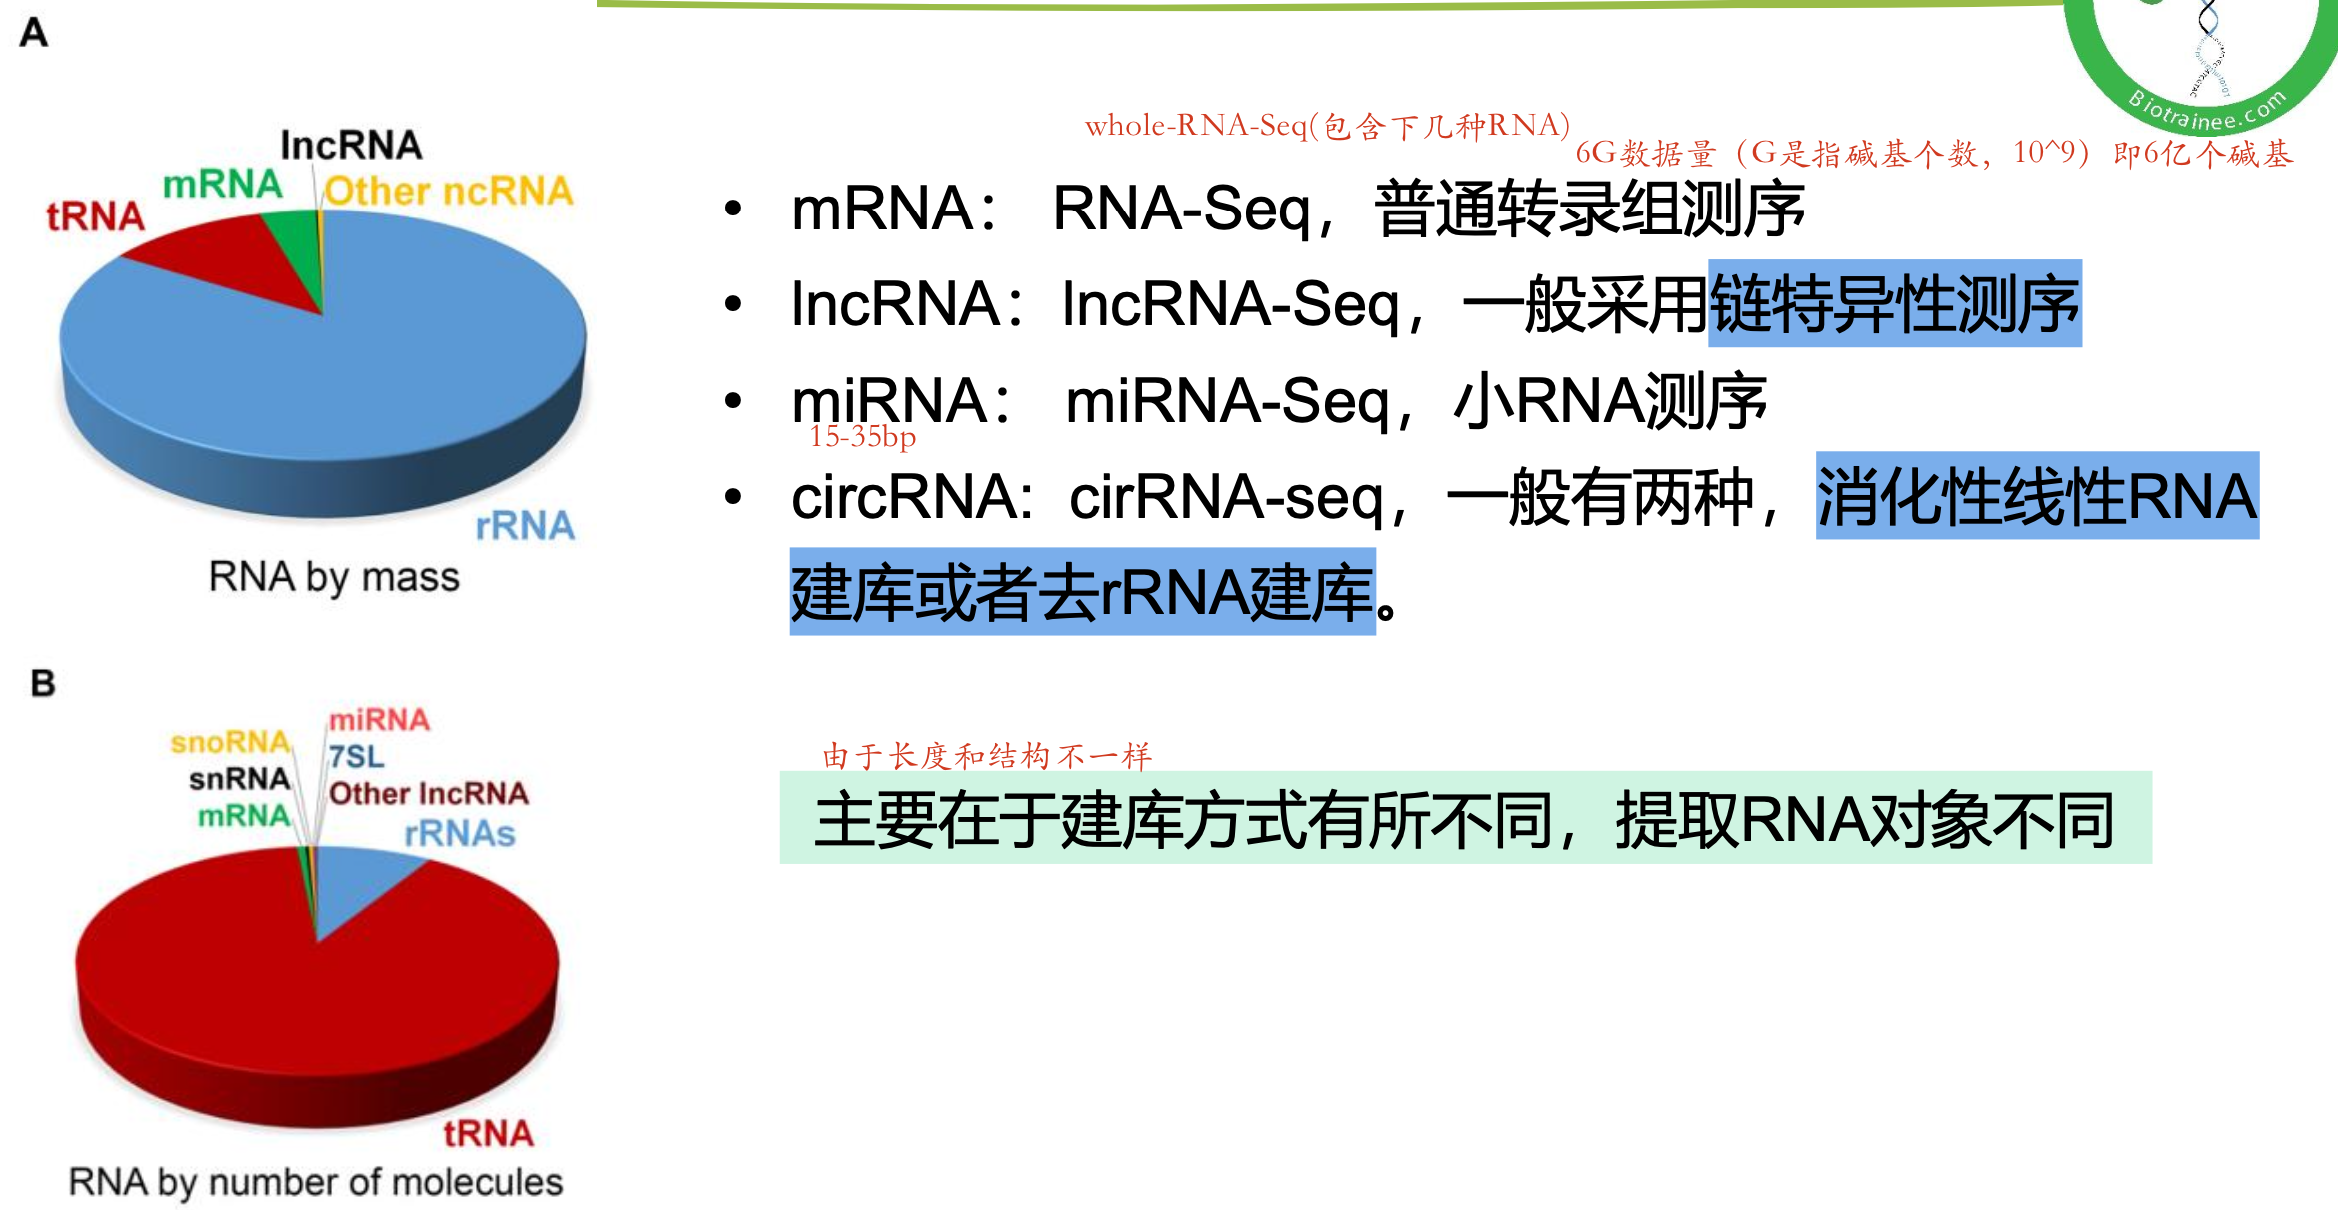 不同的RNA的建库方式和分析数据不同